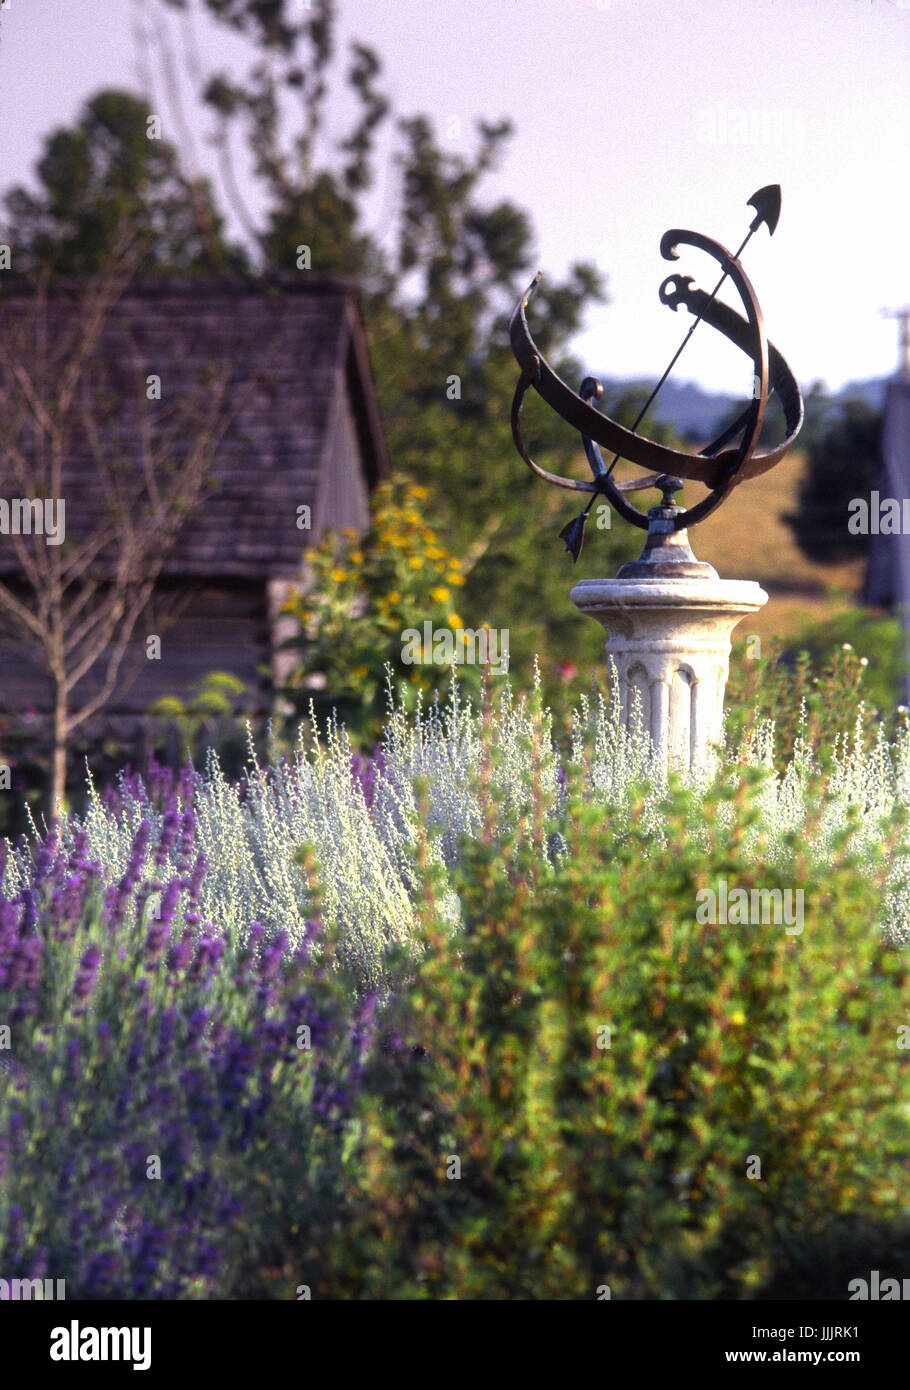 Garden with sun dial, ornamental decor, vintage barn, lavender Stock Photo